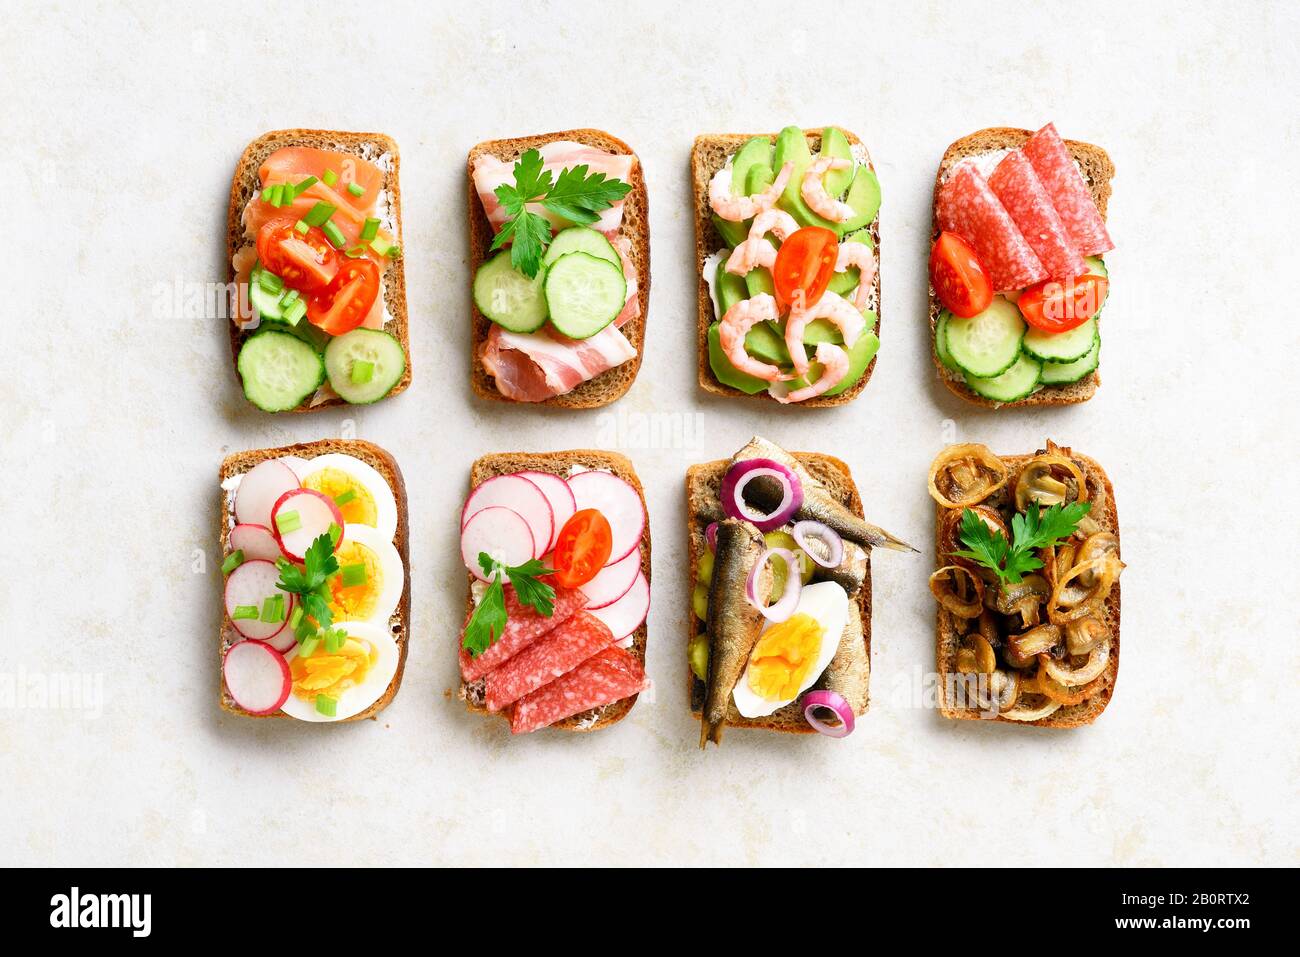 Verschiedene Sandwiches mit Fleisch, Gemüse und Seefahrt. Auswahl an offenen Sandwiches auf hellem Steingrund. Leckerer, gesunder Snack. Draufsicht, flach l. Stockfoto